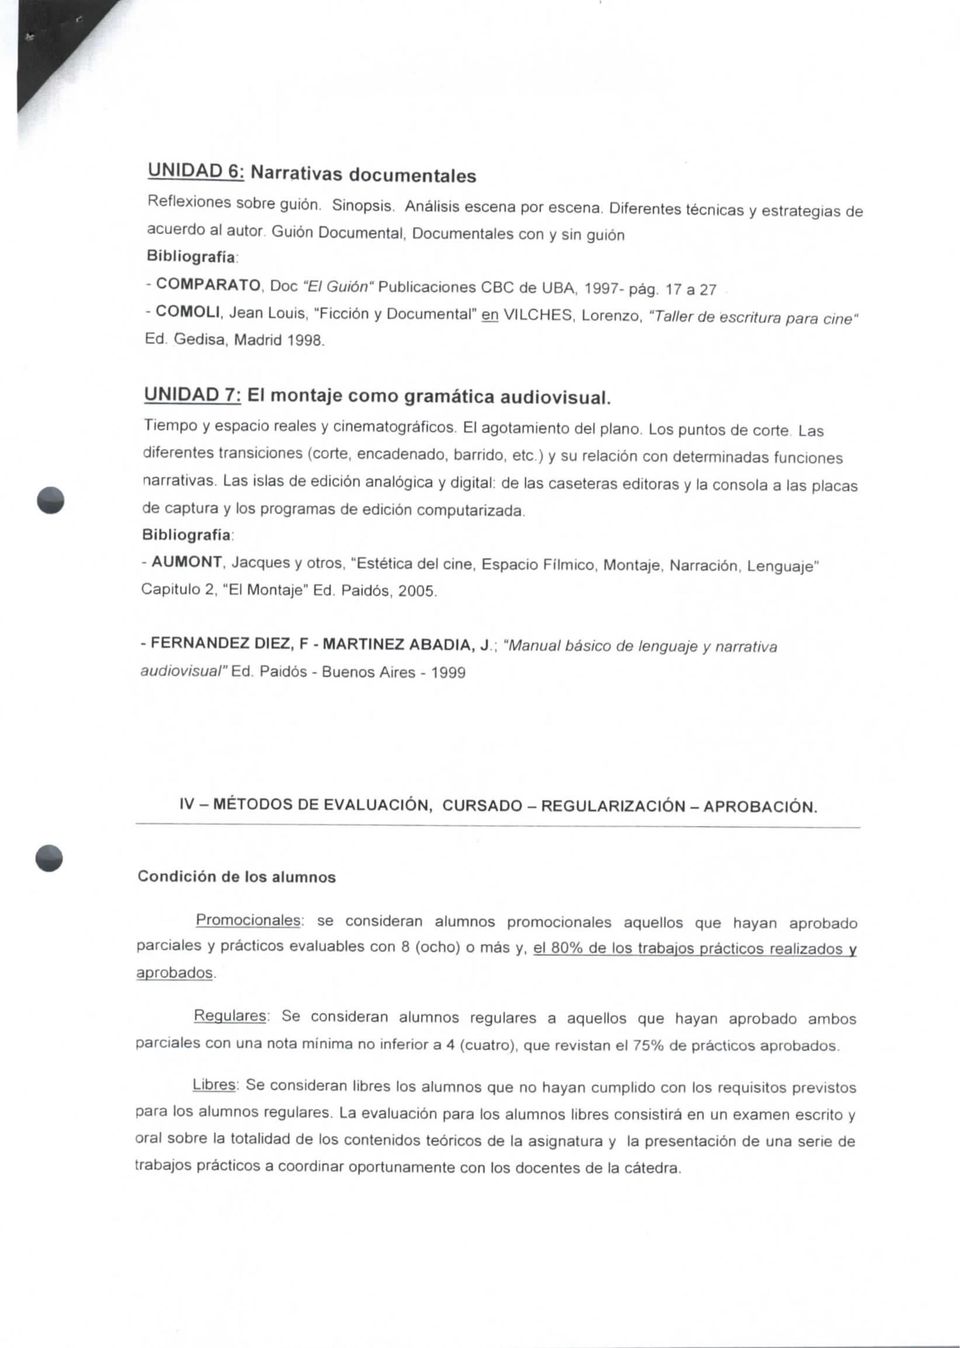 17 a 27 - COMOLI, Jean Louis, "Ficción y Documental" en VILCHES, Lorenzo, "Taller de escritura para cine" Ed. Gedisa, Madrid 1998. UNIDAD 7: El montaje como gramática audiovisual.